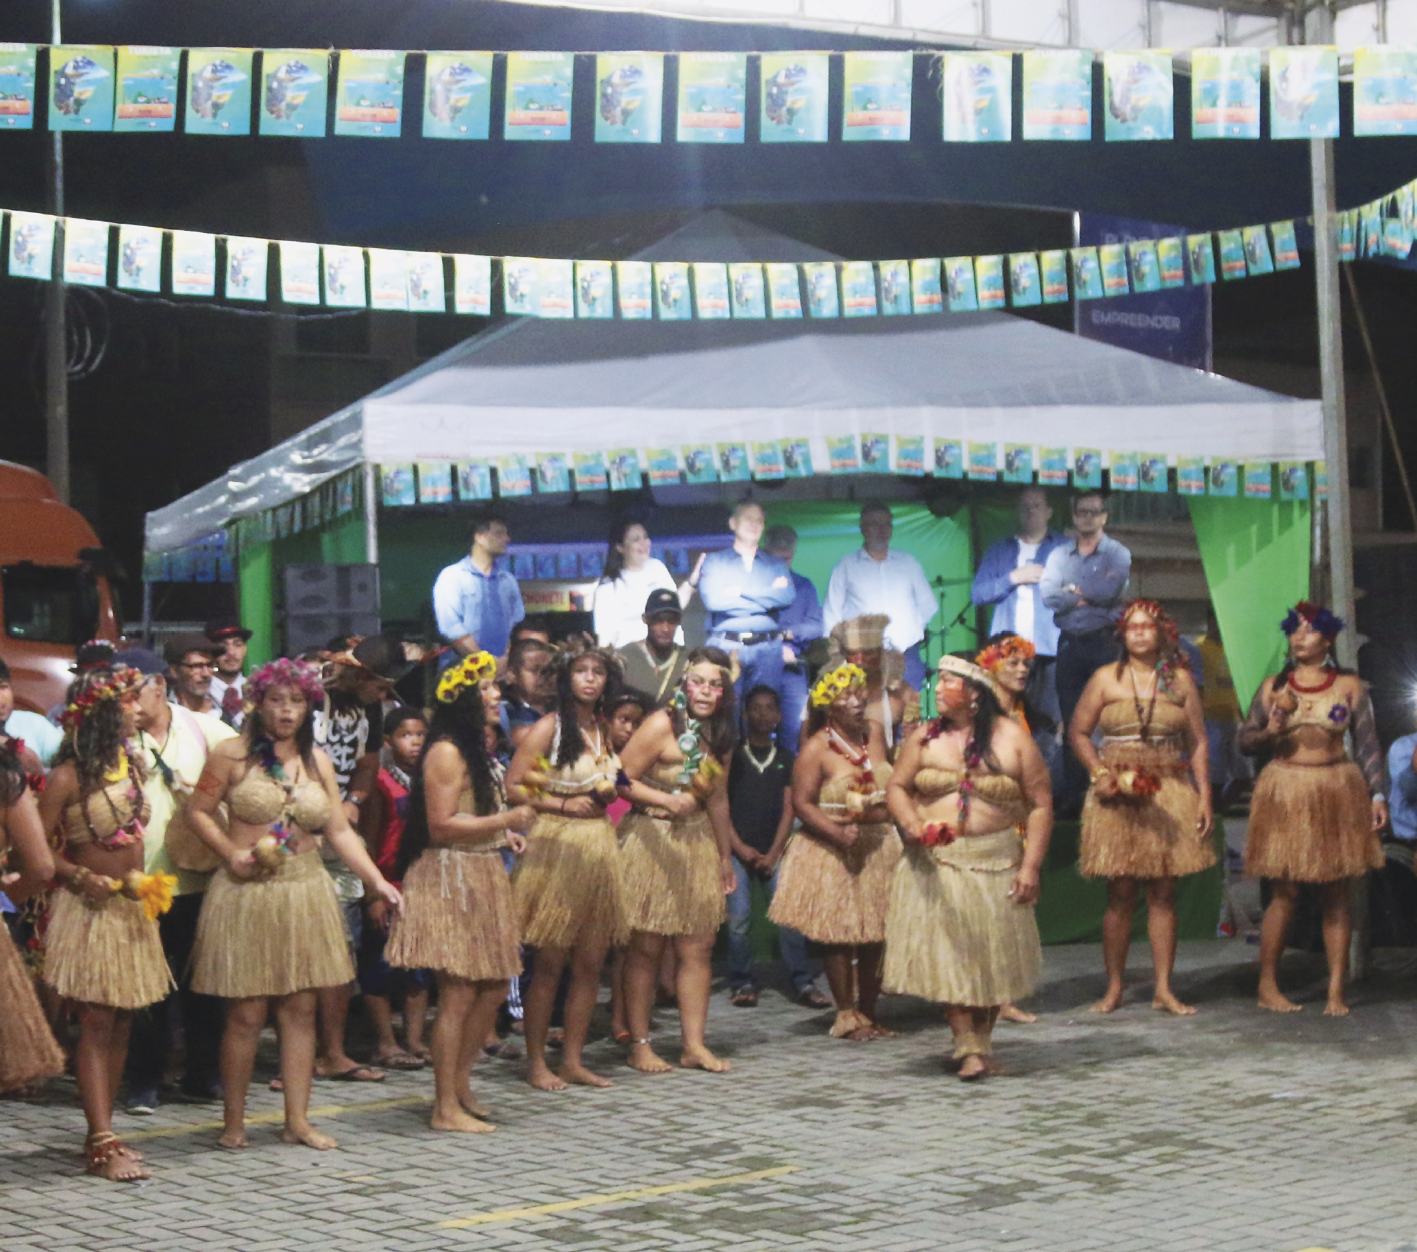 Fotografia. Mulheres indígenas usando saias feitas de palha, coroa de flores amarelas na cabeça e colares seguram chocalhos durante uma apresentação. Ao fundo, uma tenda com pessoas não-indígenas.